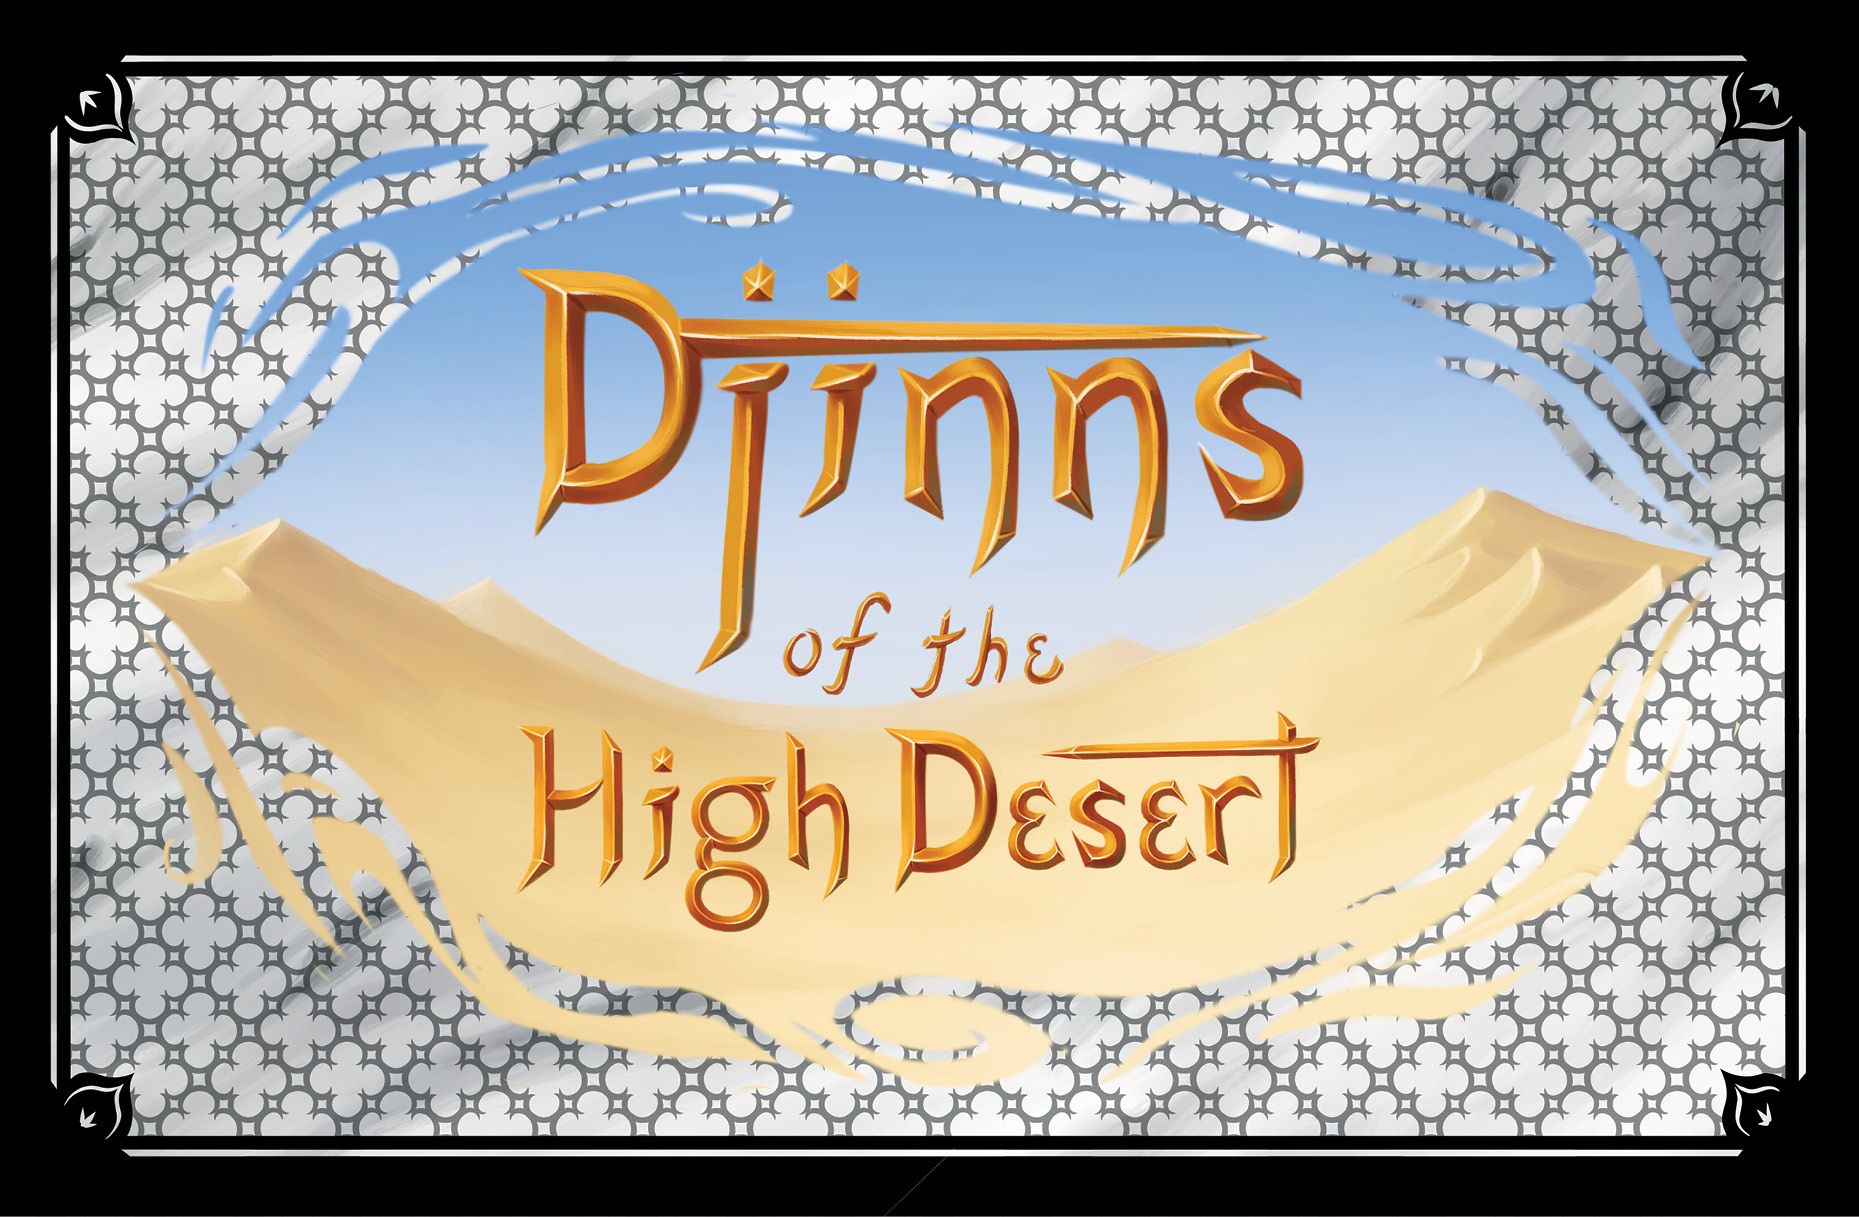 Djinns of the High Desert